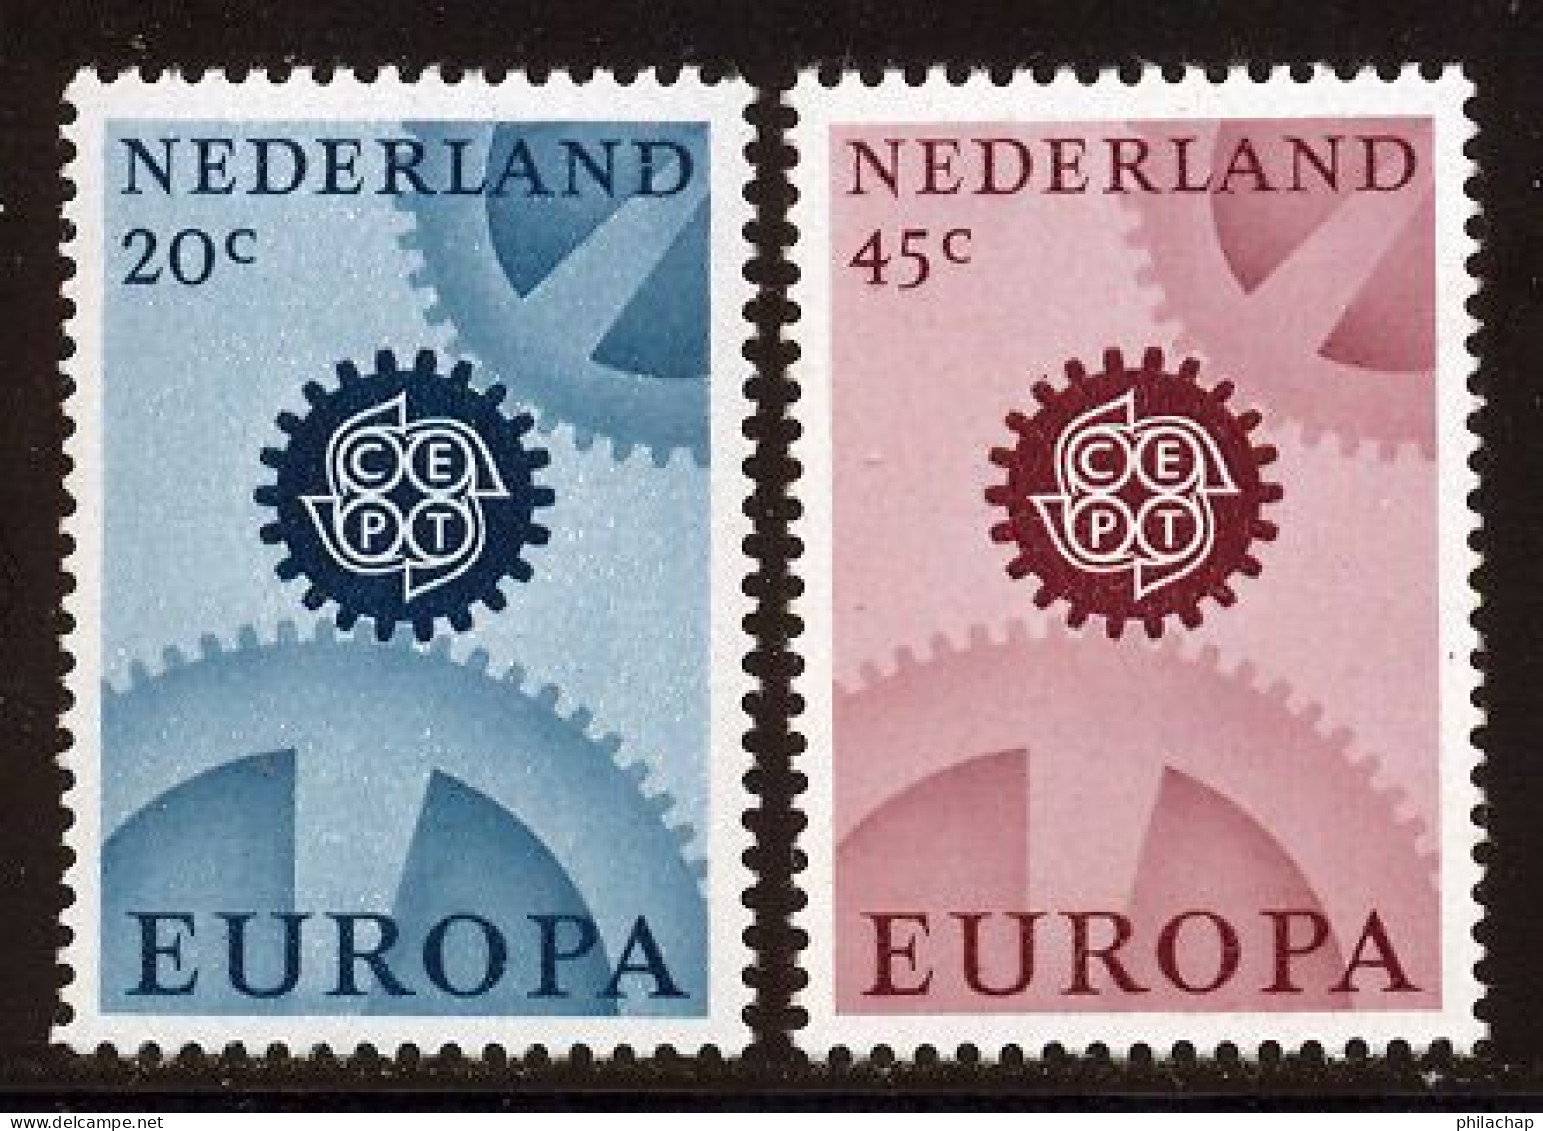 Pays-Bas 1967 Yvert 850a / 851a ** TB Phosphorescent - Neufs